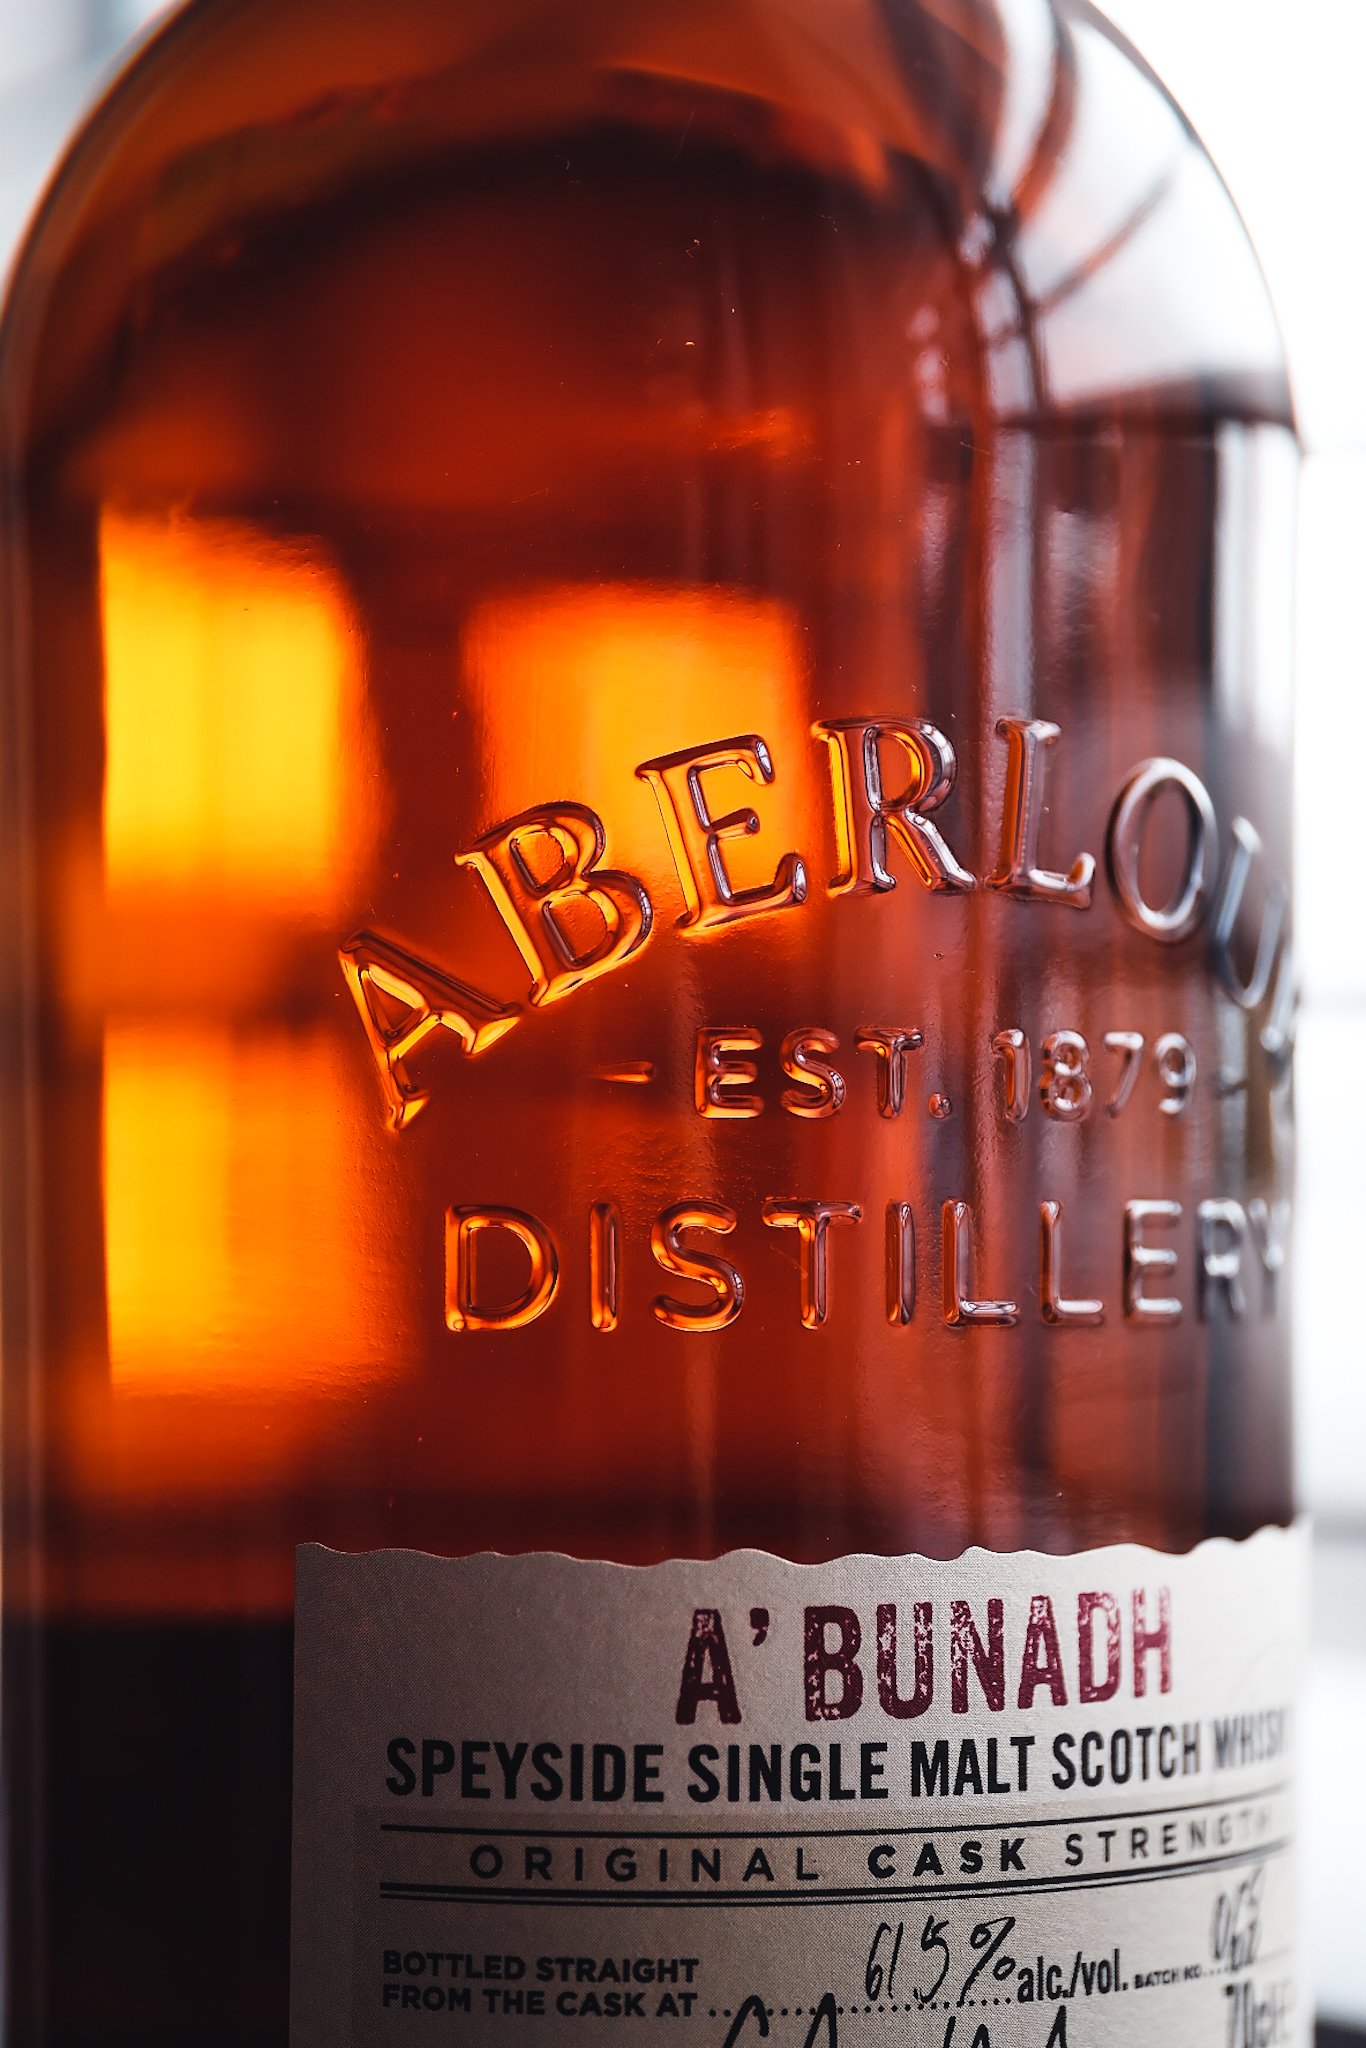 Aberlour A'Bunadh Batch 76 Whisky